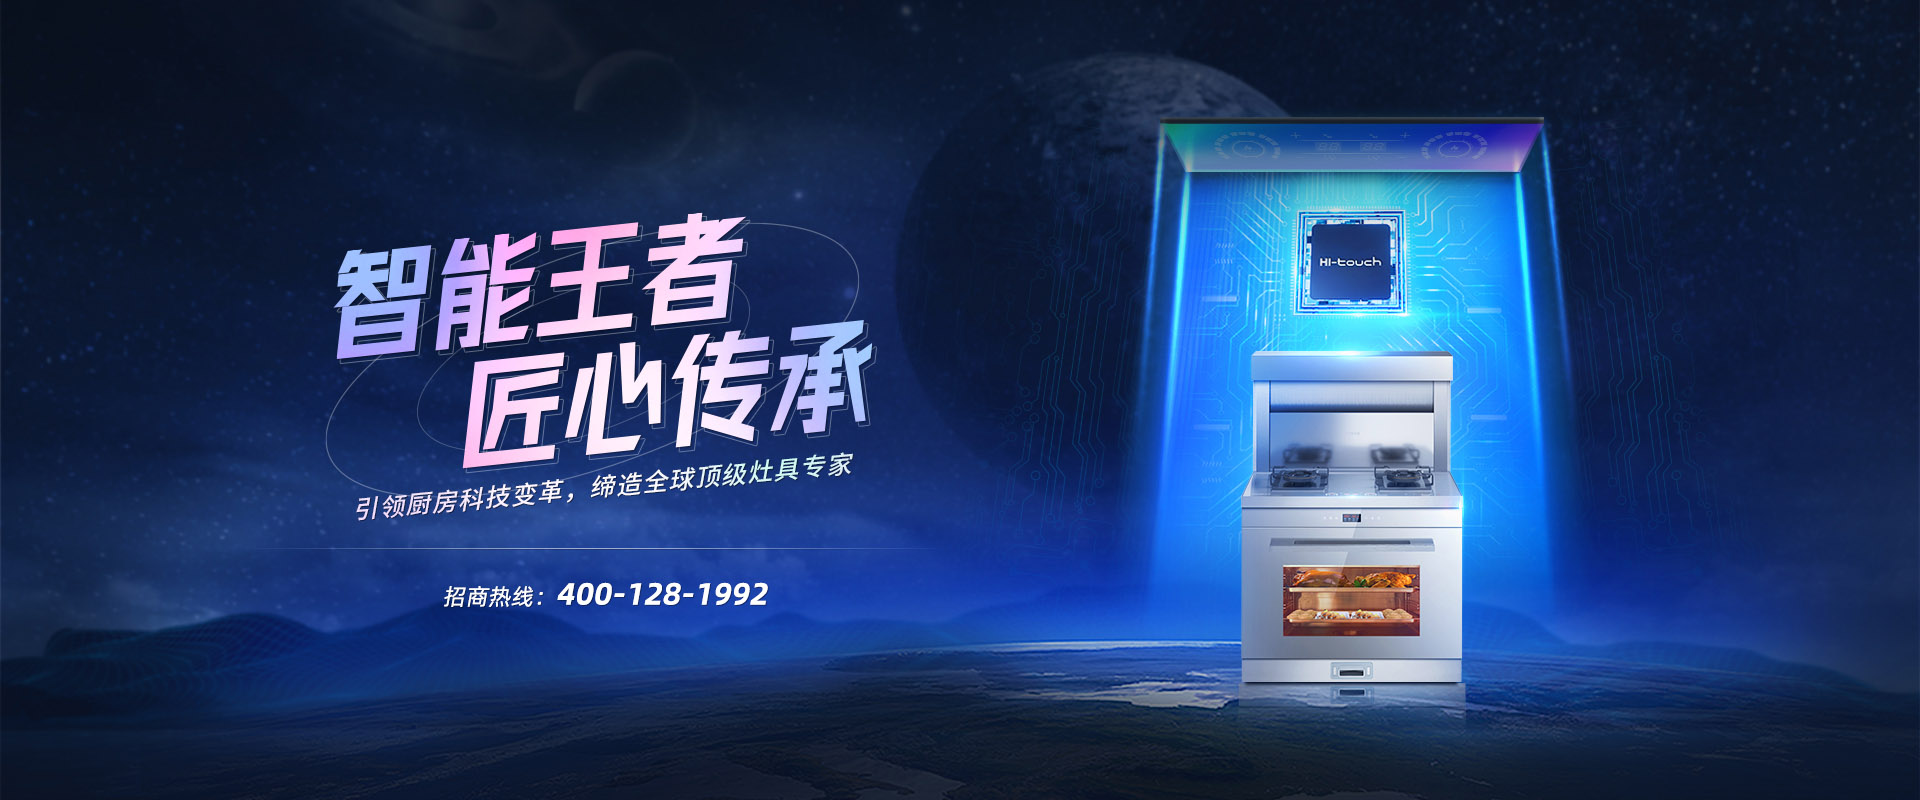 1992年，Hione火王始创于深圳。中国第一台旋火燃气灶、第一台红外线燃气灶、第一台嵌入式燃气灶、第一台玻璃燃气灶、第一台触屏灶、第一台智能灶都在这诞生。